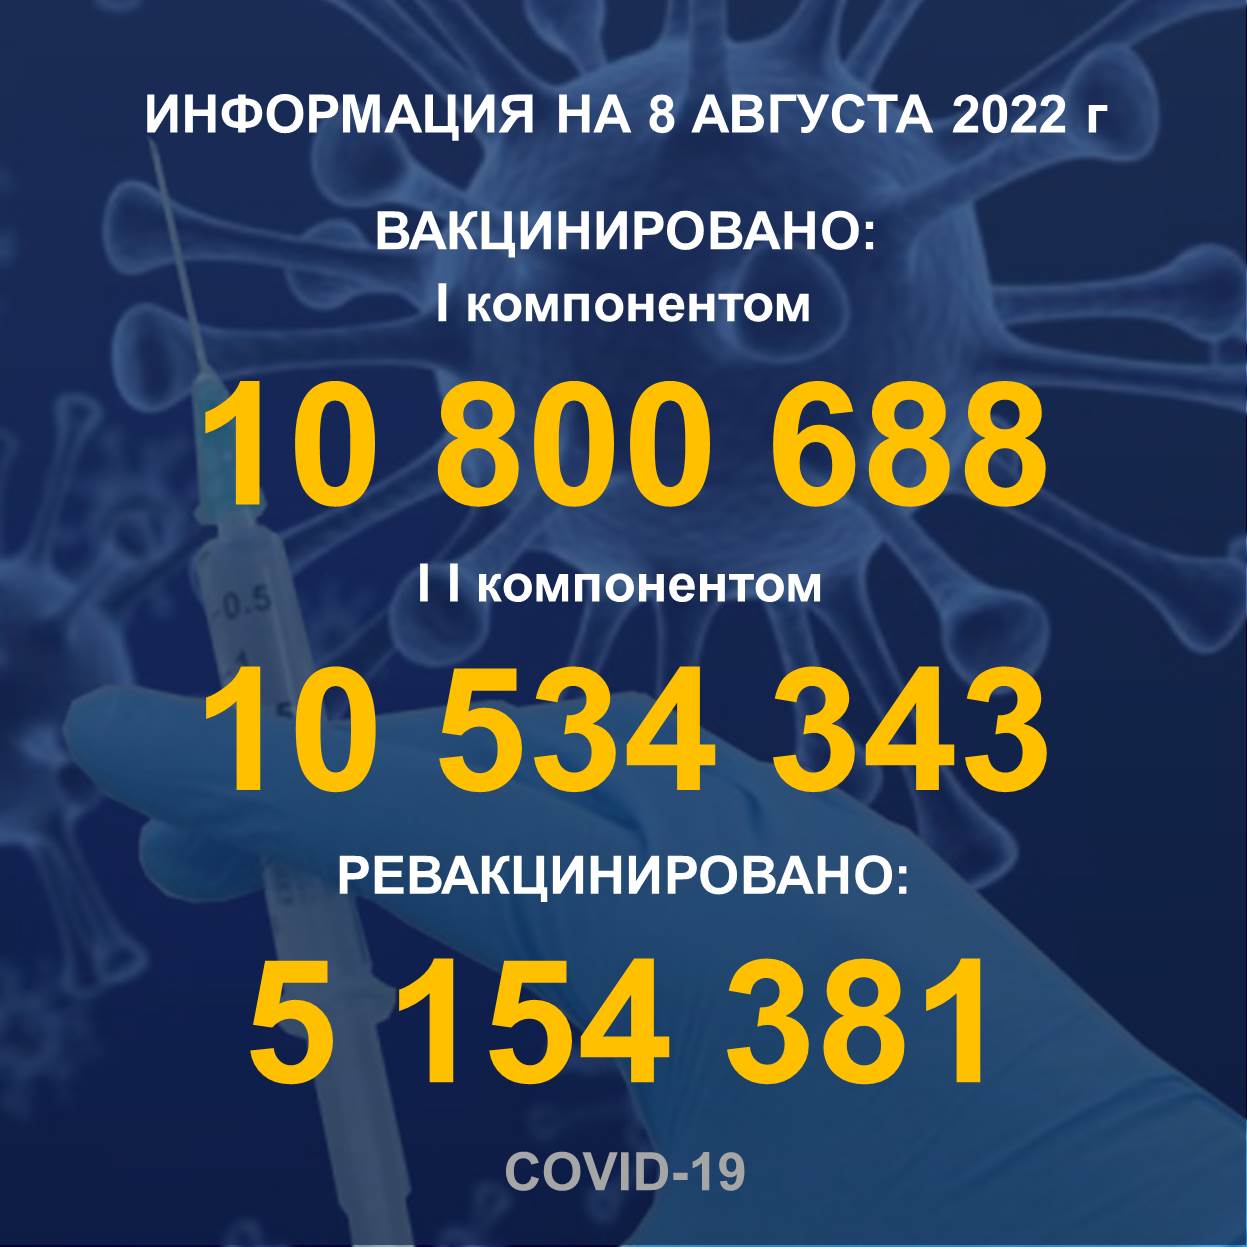 I компонентом 10 800 688 еловек провакцинировано в Казахстане на 8.08.2022 г, II компонентом 10 534 343 человек. Ревакцинировано – 5 154 381